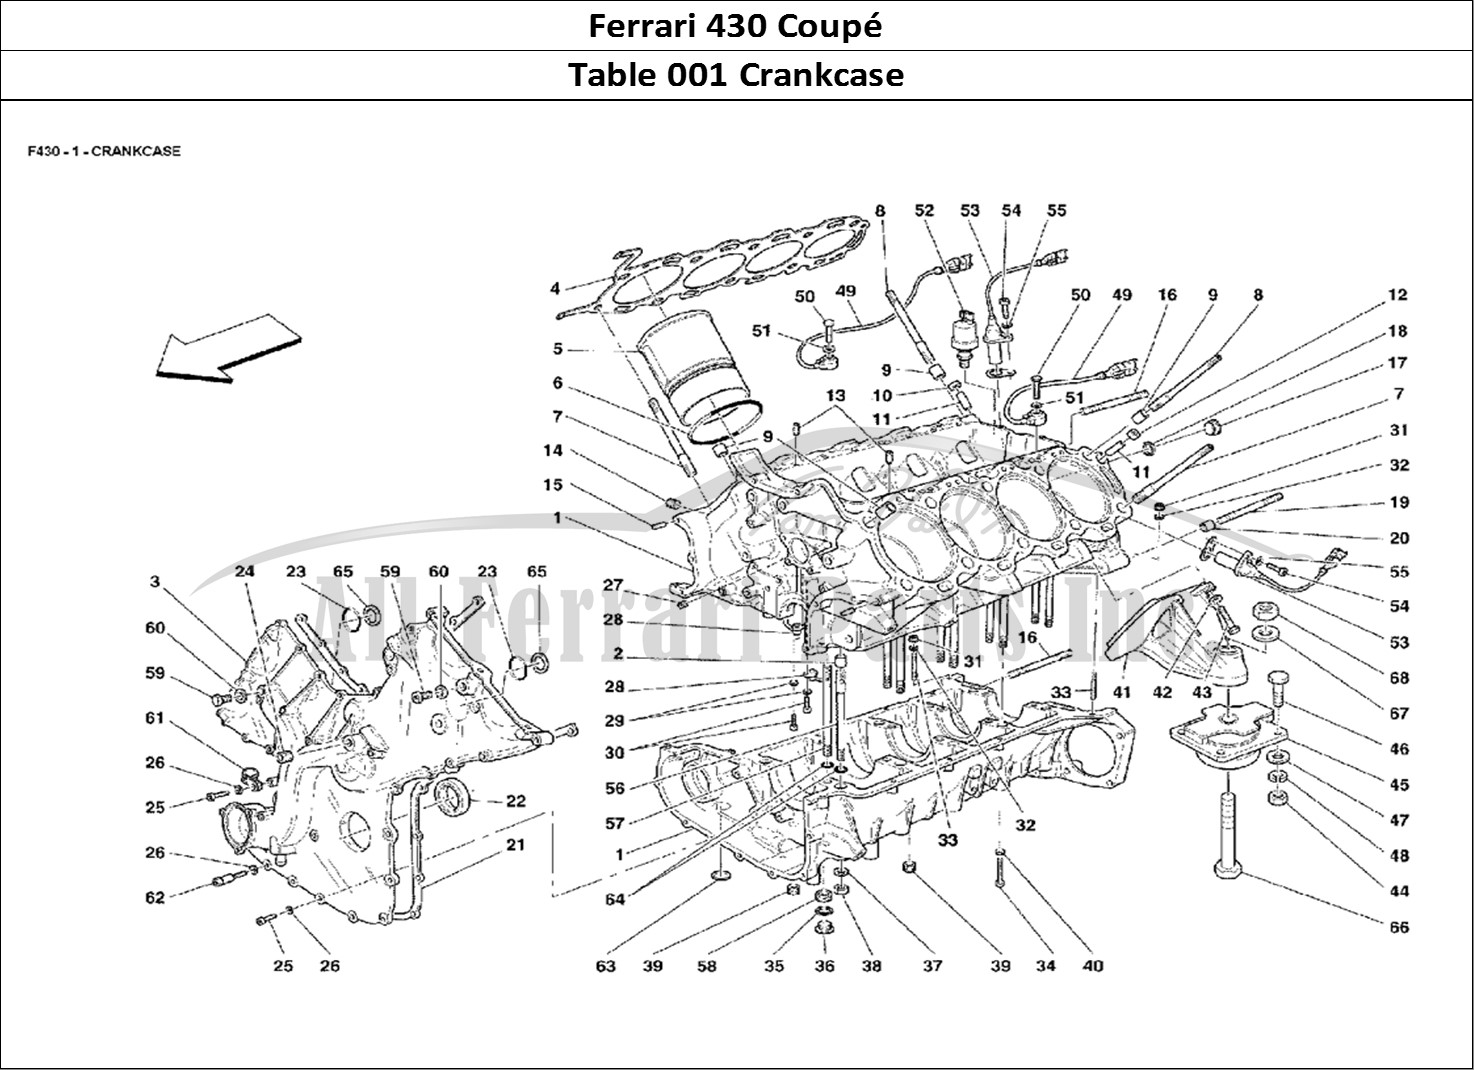 Ferrari Parts Ferrari 430 Coup Page 001 Crankcase